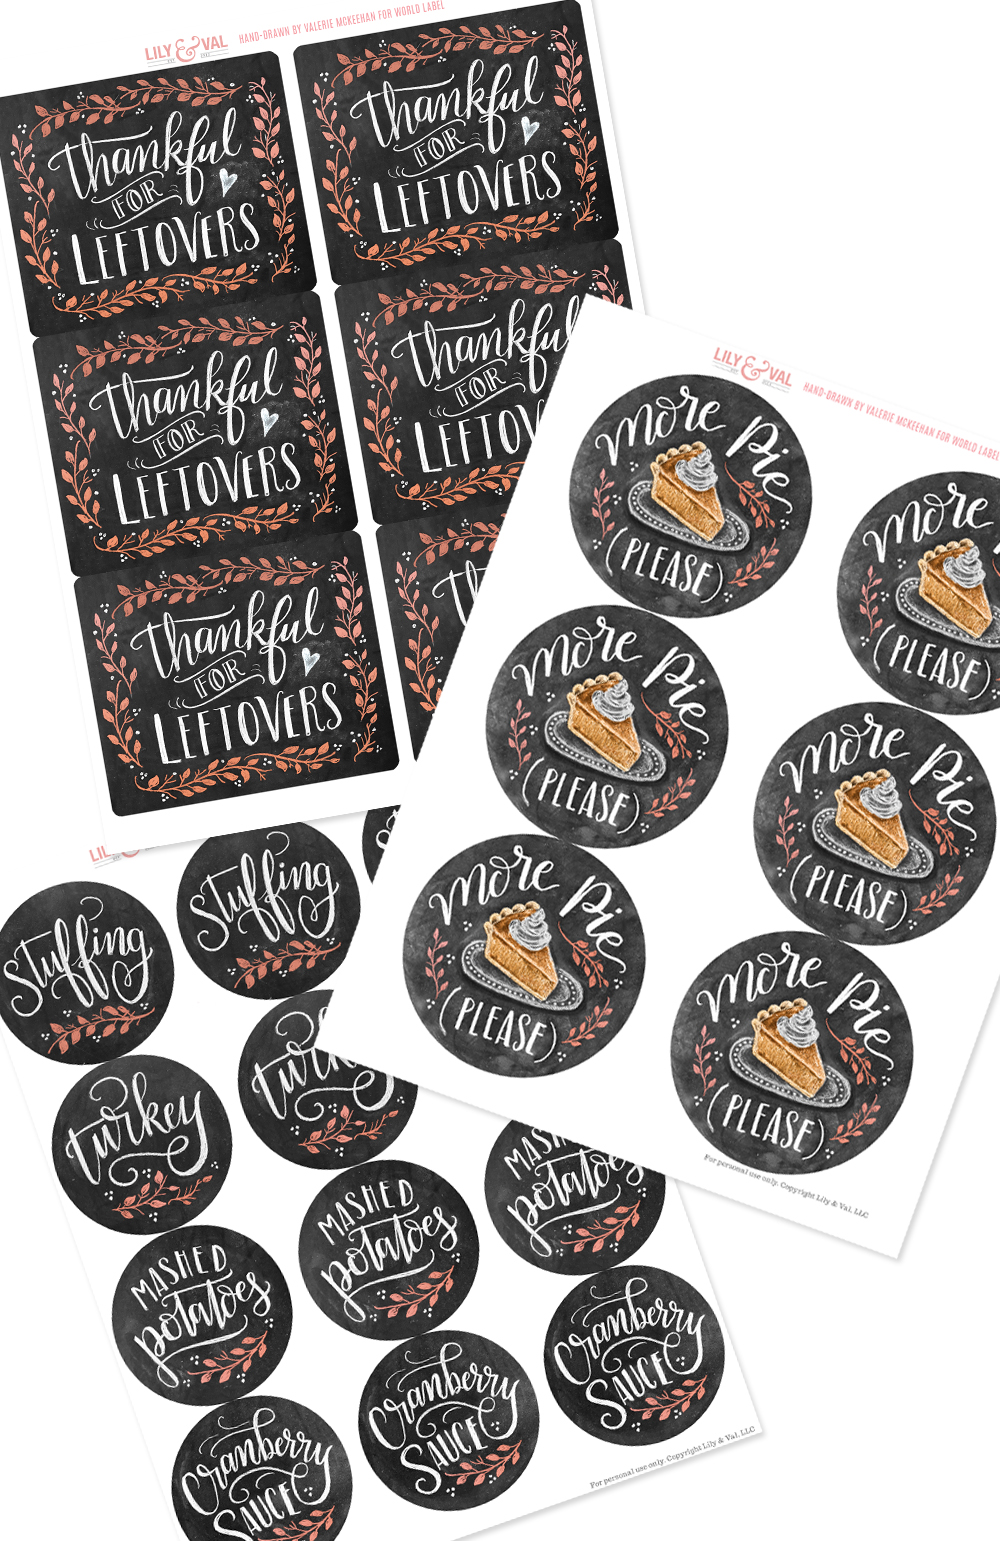 Thanksgiving Leftover Labels By Valerie Mckeehan Free Printable Labels Templates Label Design Worldlabel Blog